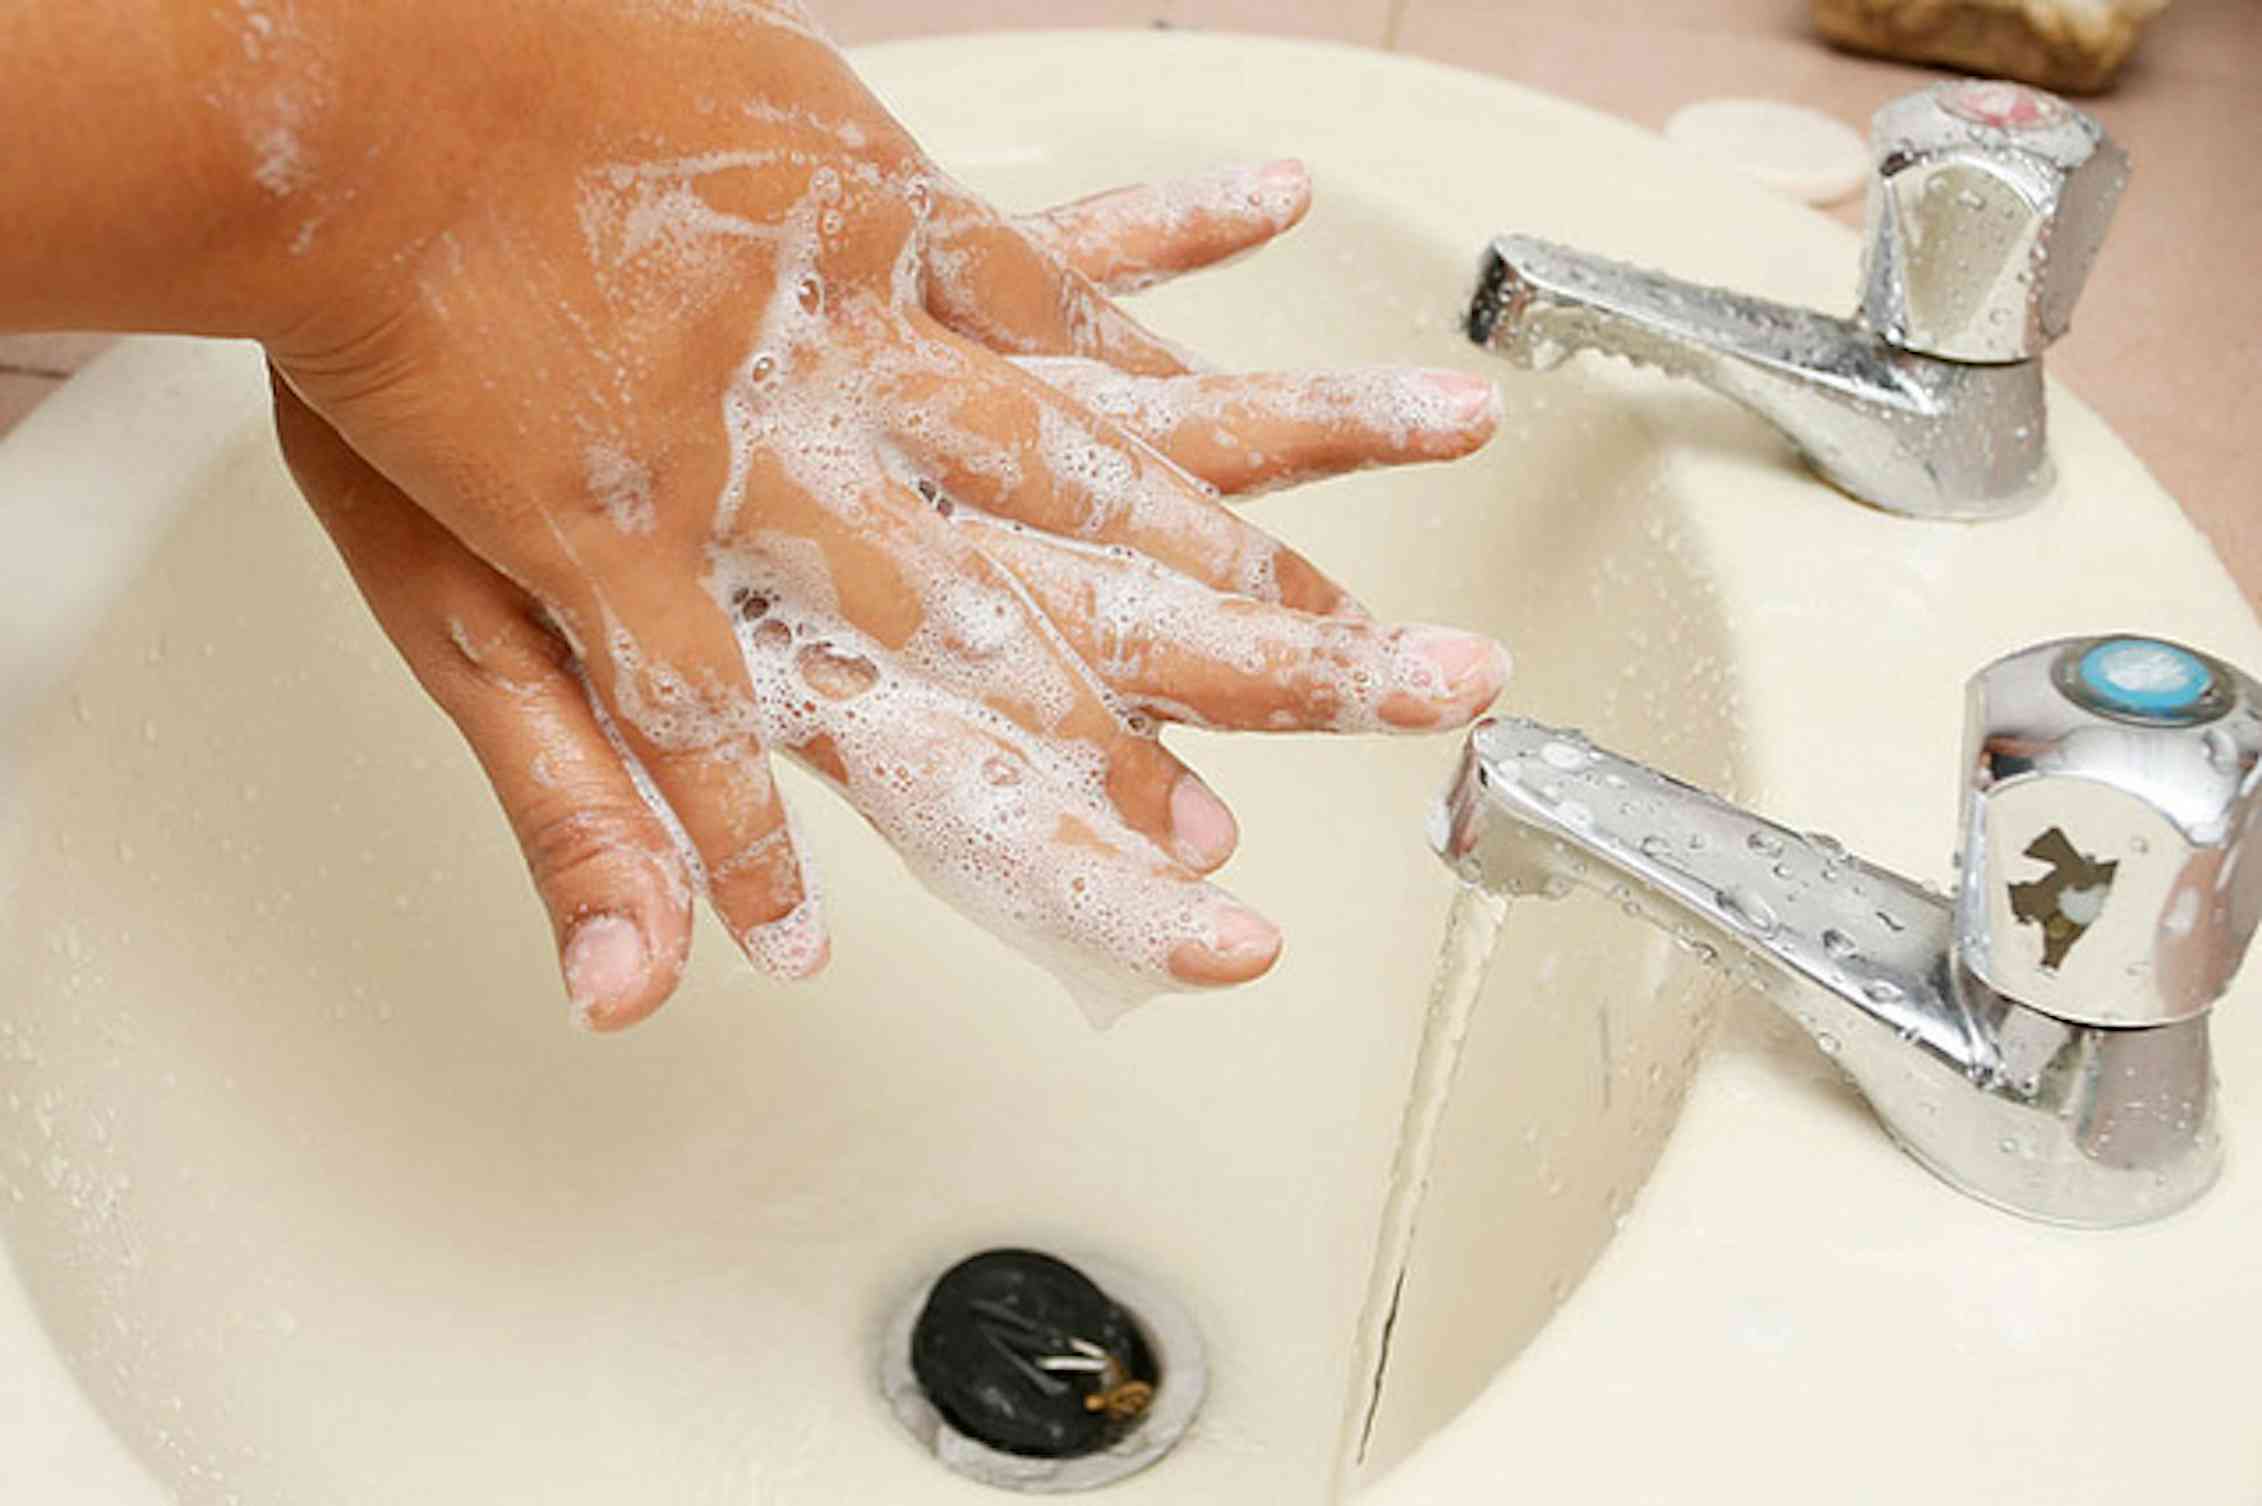 Можно помыть руки. Мытье рук с мылом. Мыло для рук. Моем руки с мылом. Вымыть руки с мылом под проточной водой.